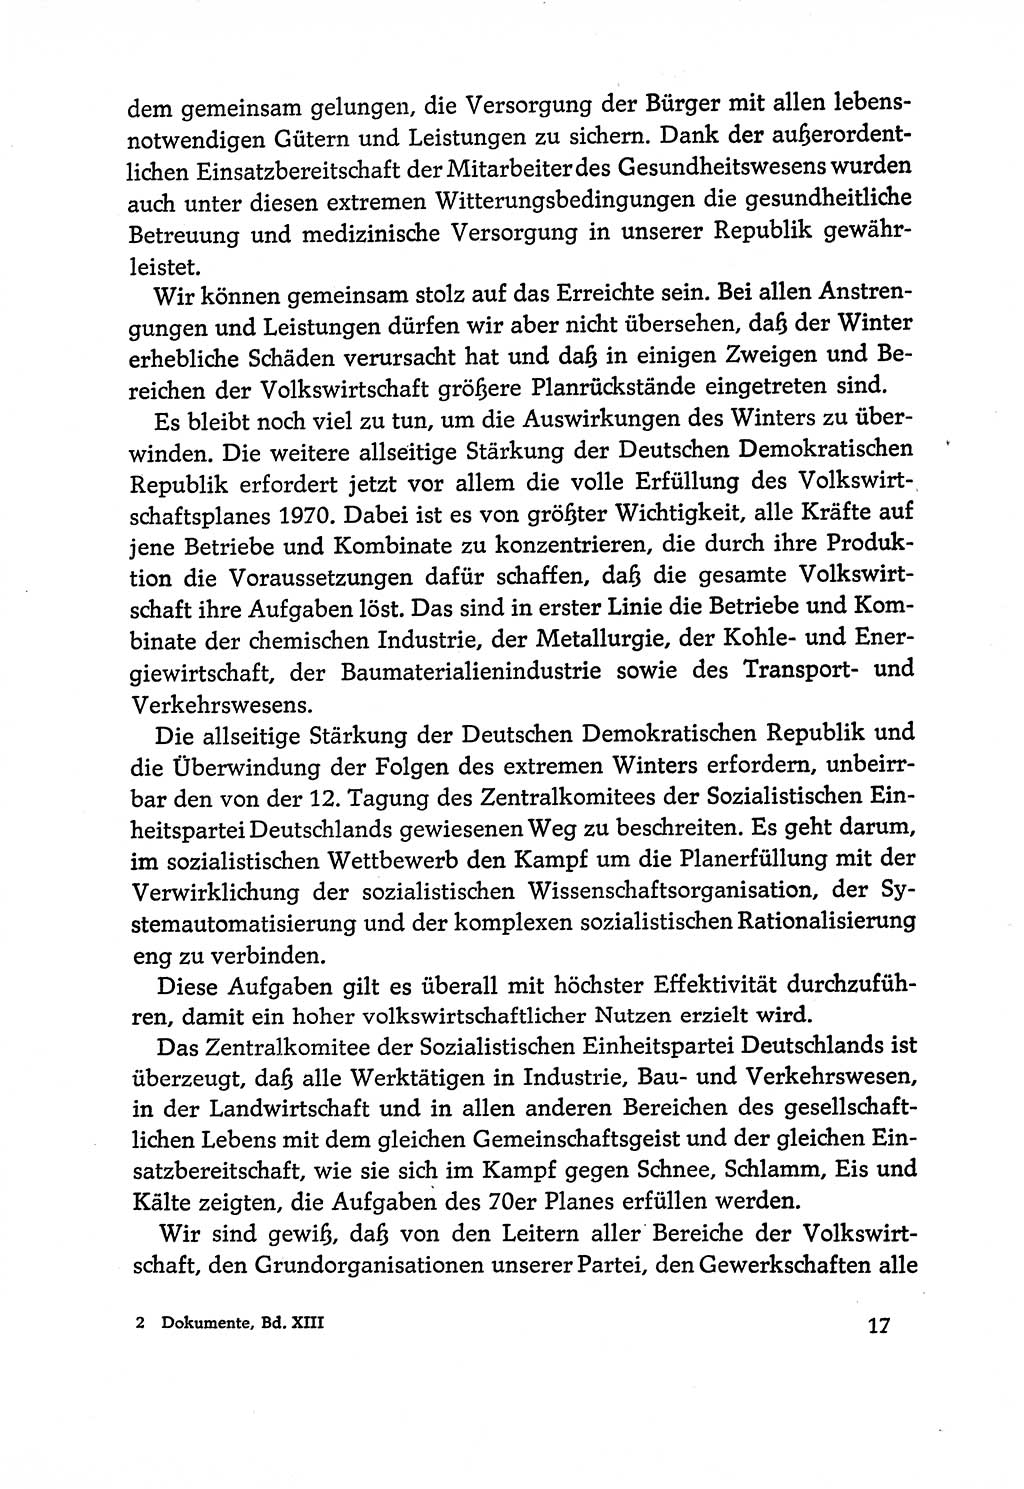 Dokumente der Sozialistischen Einheitspartei Deutschlands (SED) [Deutsche Demokratische Republik (DDR)] 1970-1971, Seite 17 (Dok. SED DDR 1970-1971, S. 17)